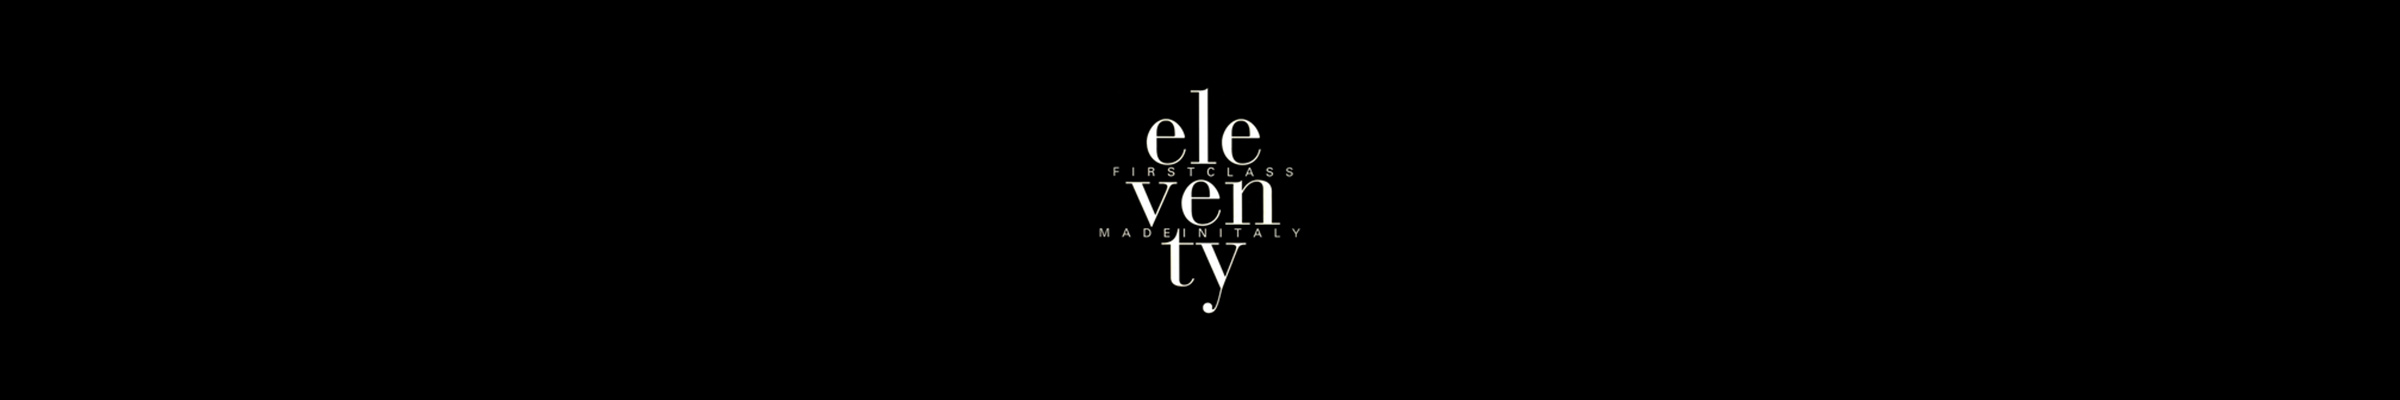 eleventy-banner